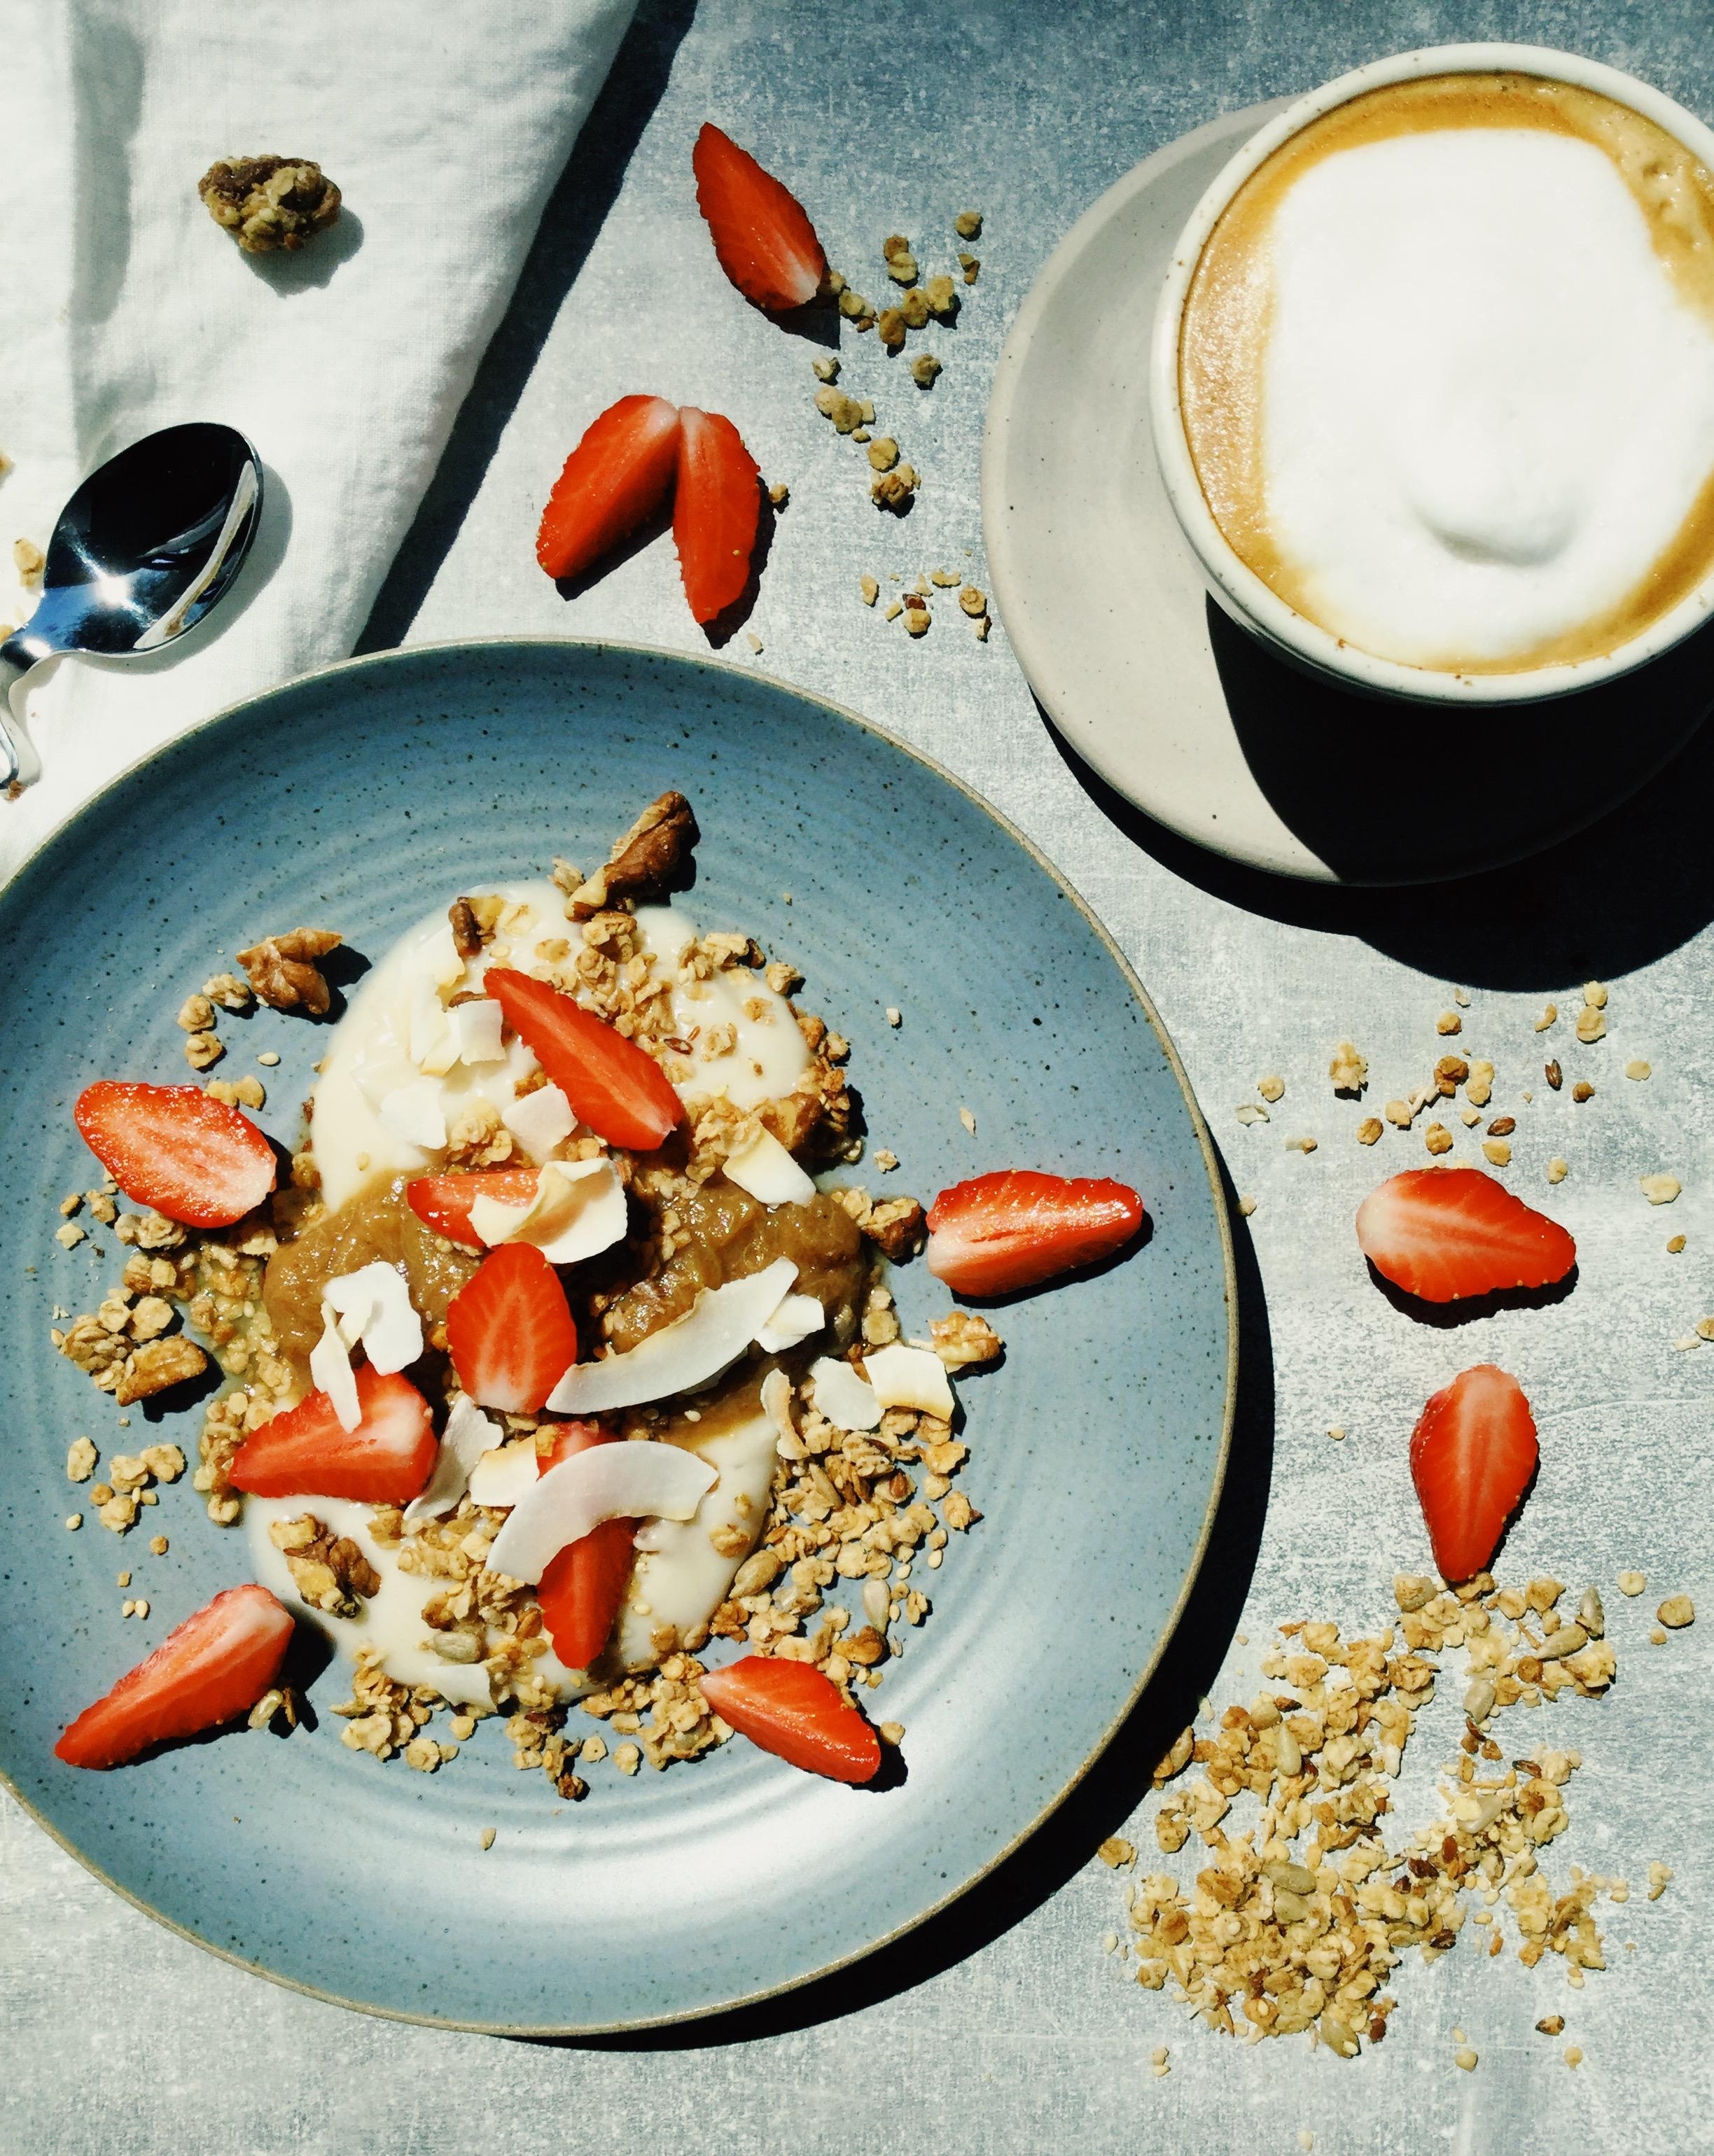 Super crunchy Walnuss- #Granola 😋 zum Frühstück oder einfach zum Naschen 🙈 #frühstück #Erdbeeren #Rhabarber 